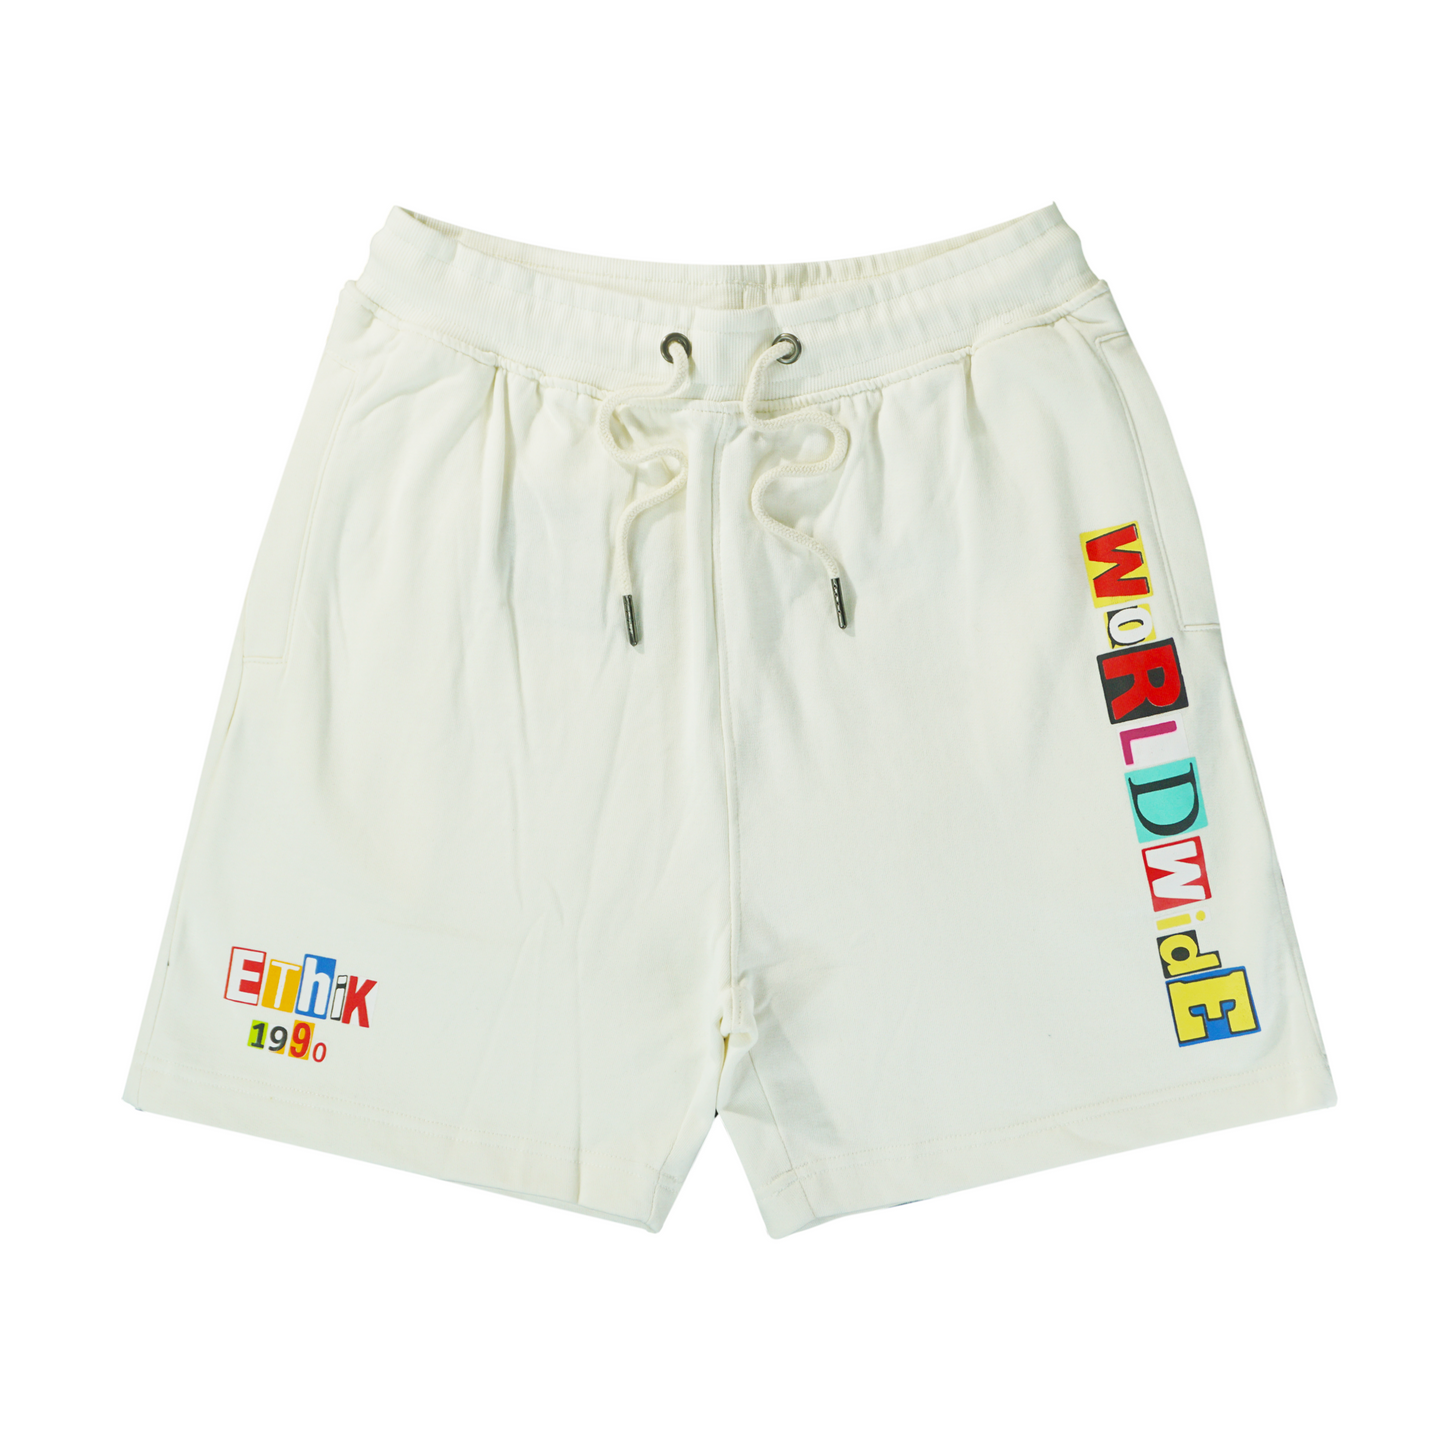 Ransom Shorts (White) /C5